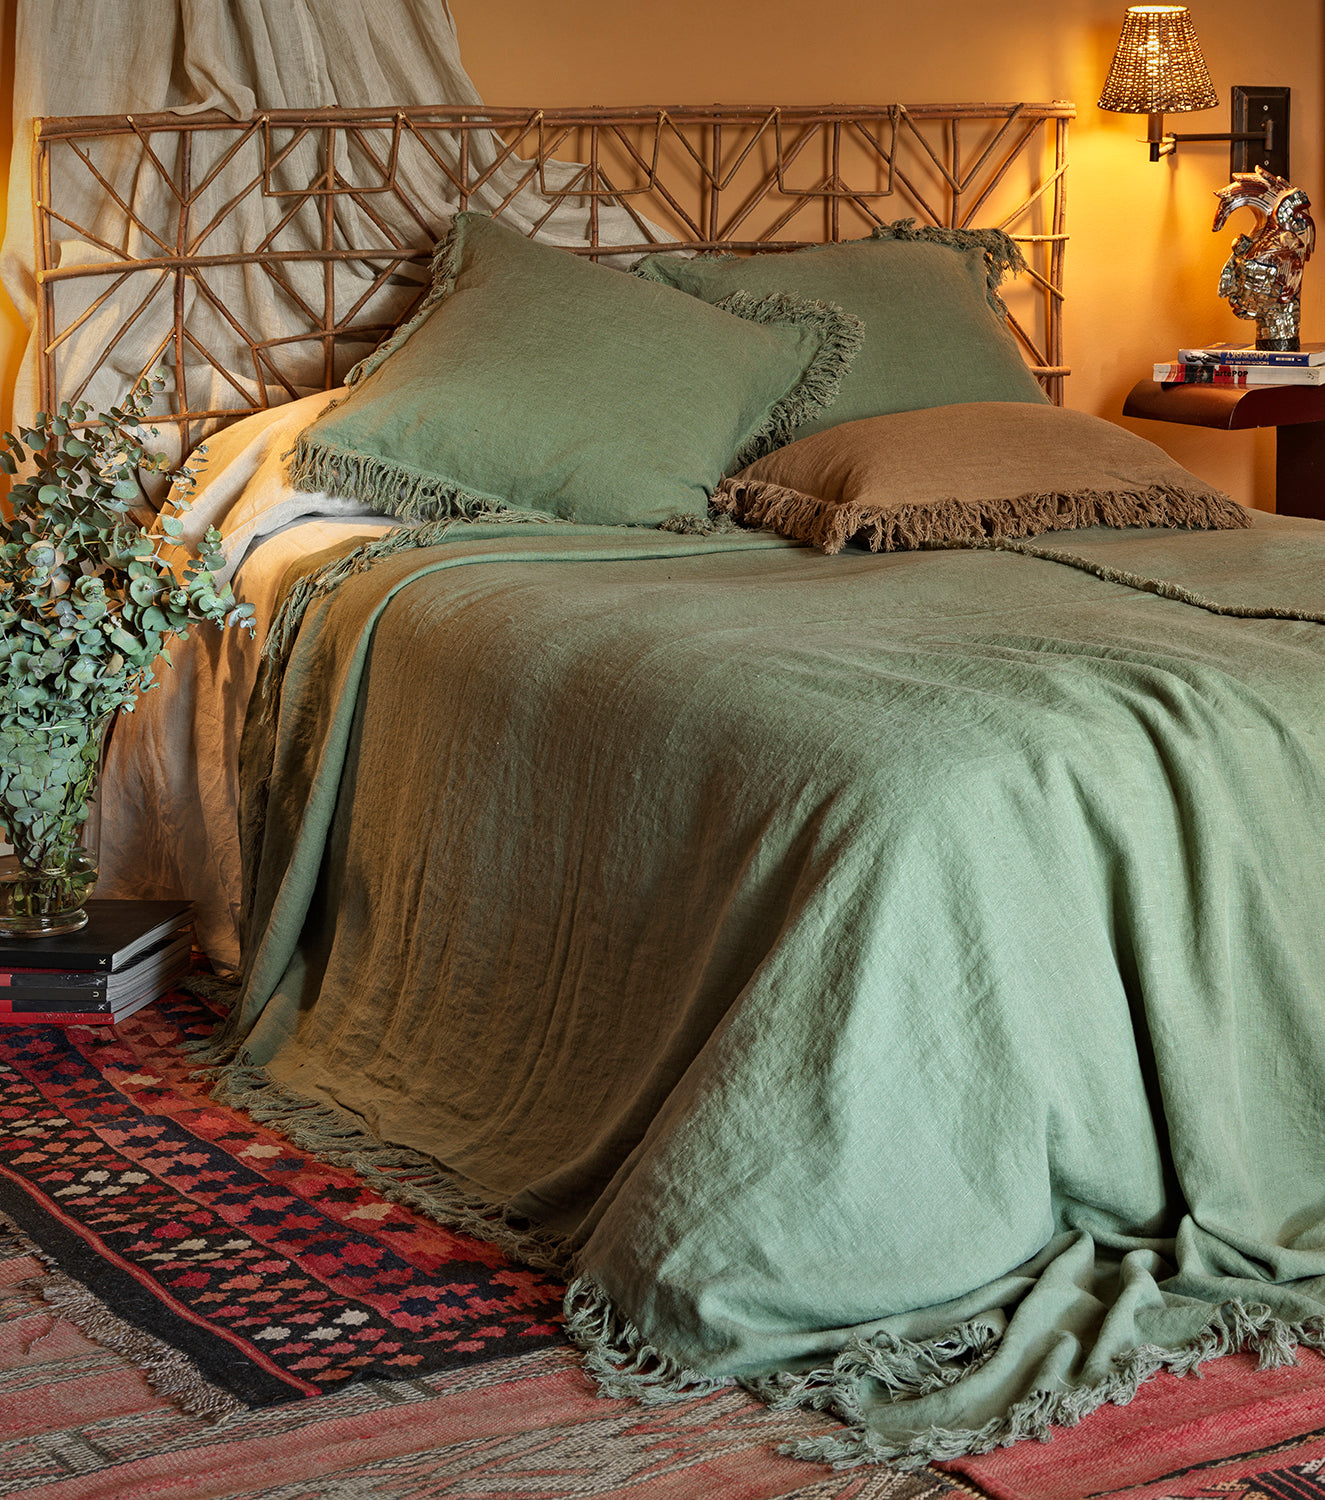 Colcha de lino verde para verano. Colcha con flecos y cojines a juego. Colección Marrakech.